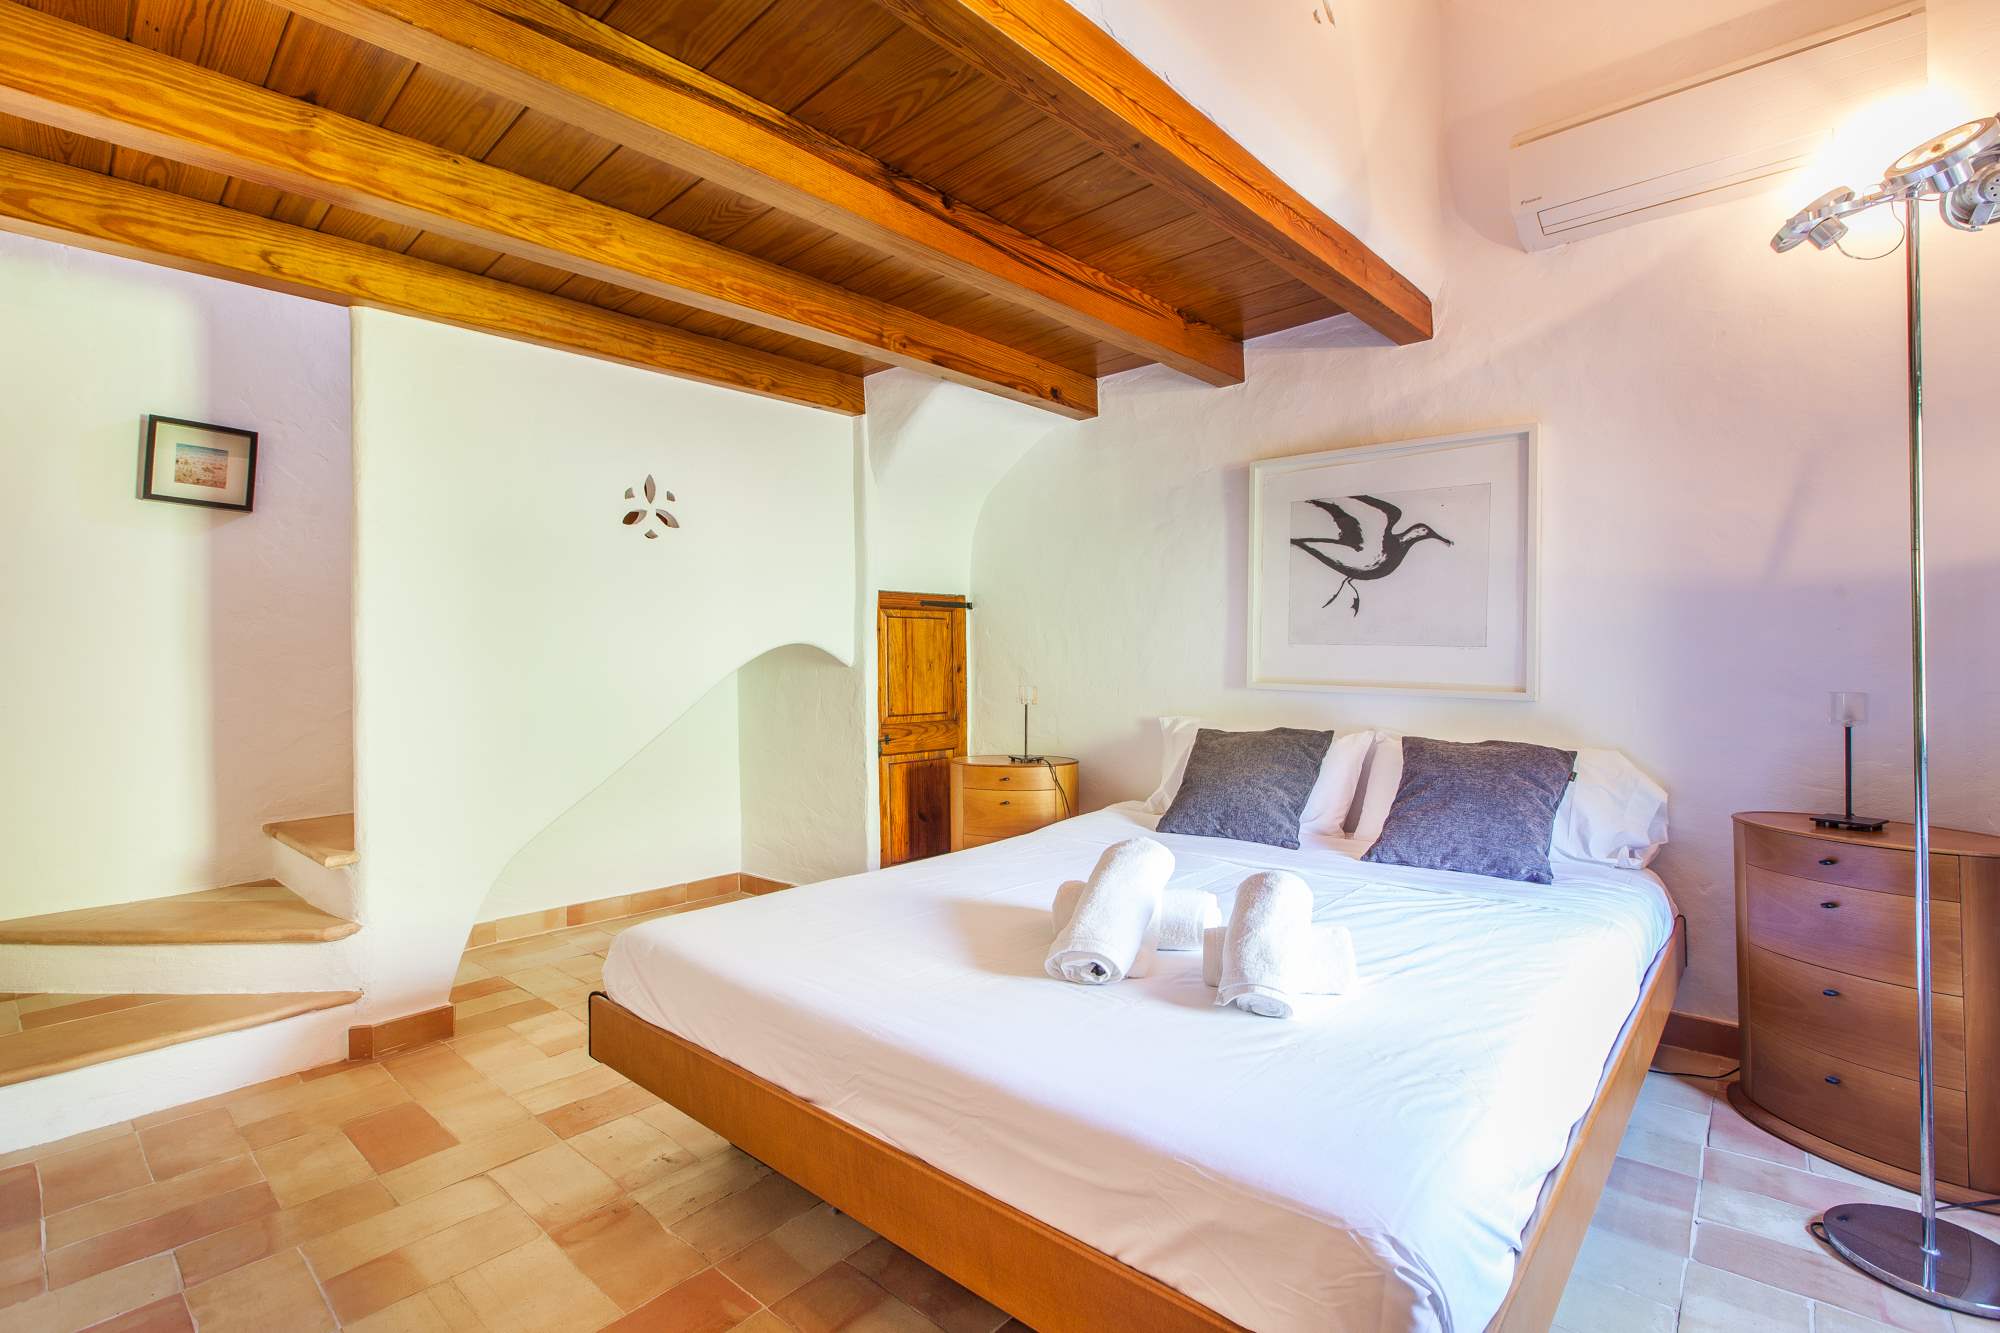 Es Clotal, 4 bedroom, 4 bedroom villa in Pollensa & Puerto Pollensa, Majorca Photo #20